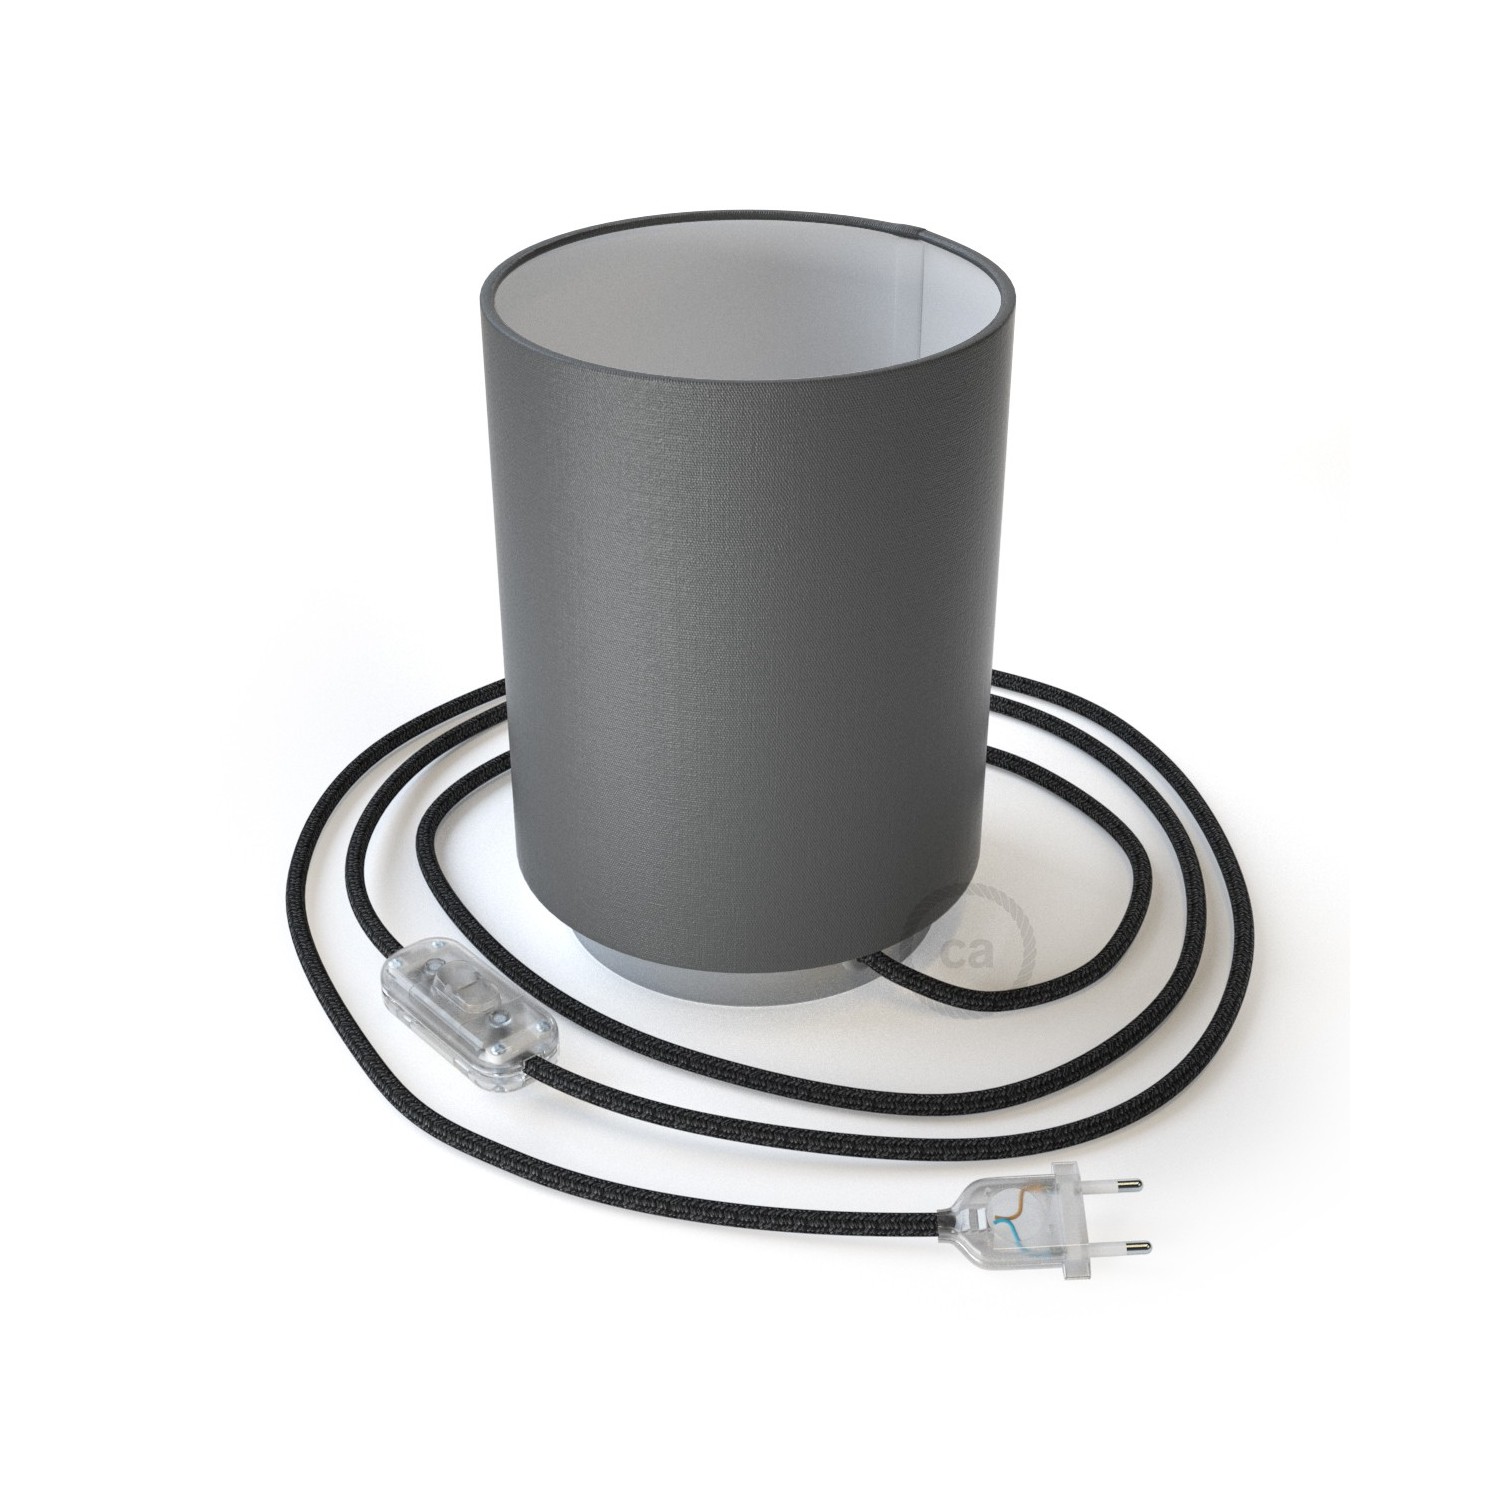 Posaluce Metal met penguin-electra lampenkap Cilindro, inclusief lichtbron, textielkabel, schakelaar en 2-polige stekker